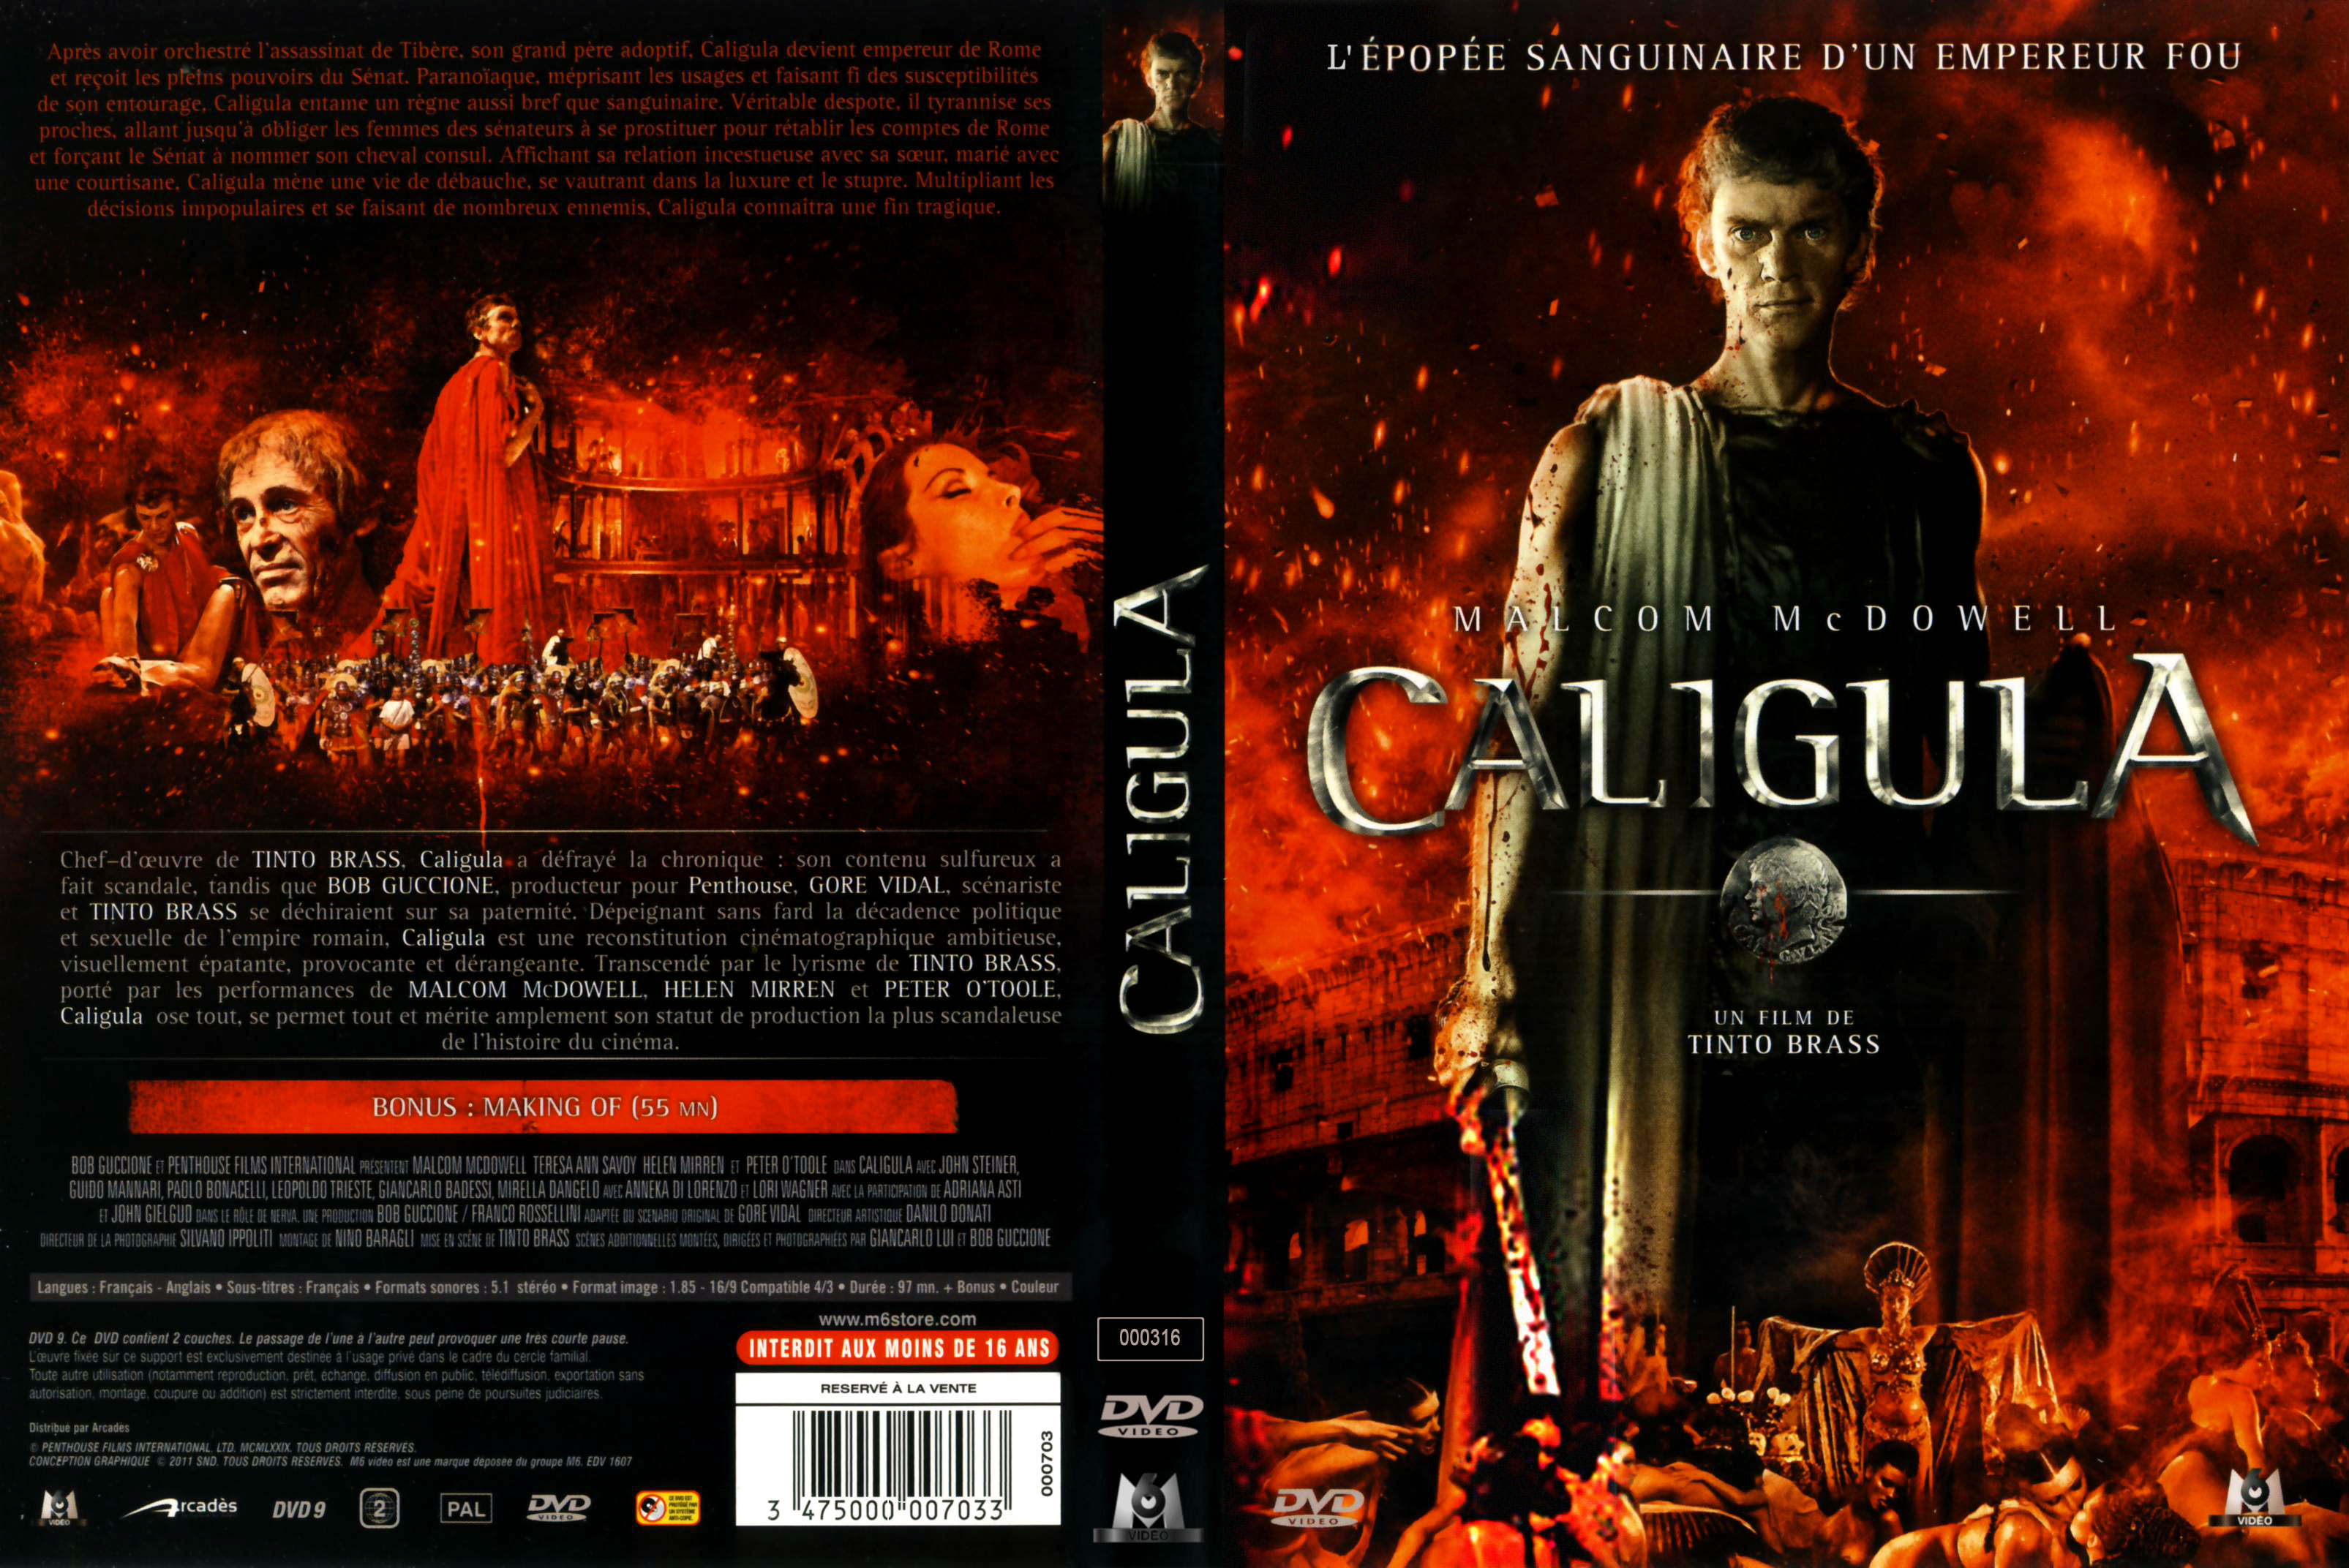 Jaquette DVD Caligula v2